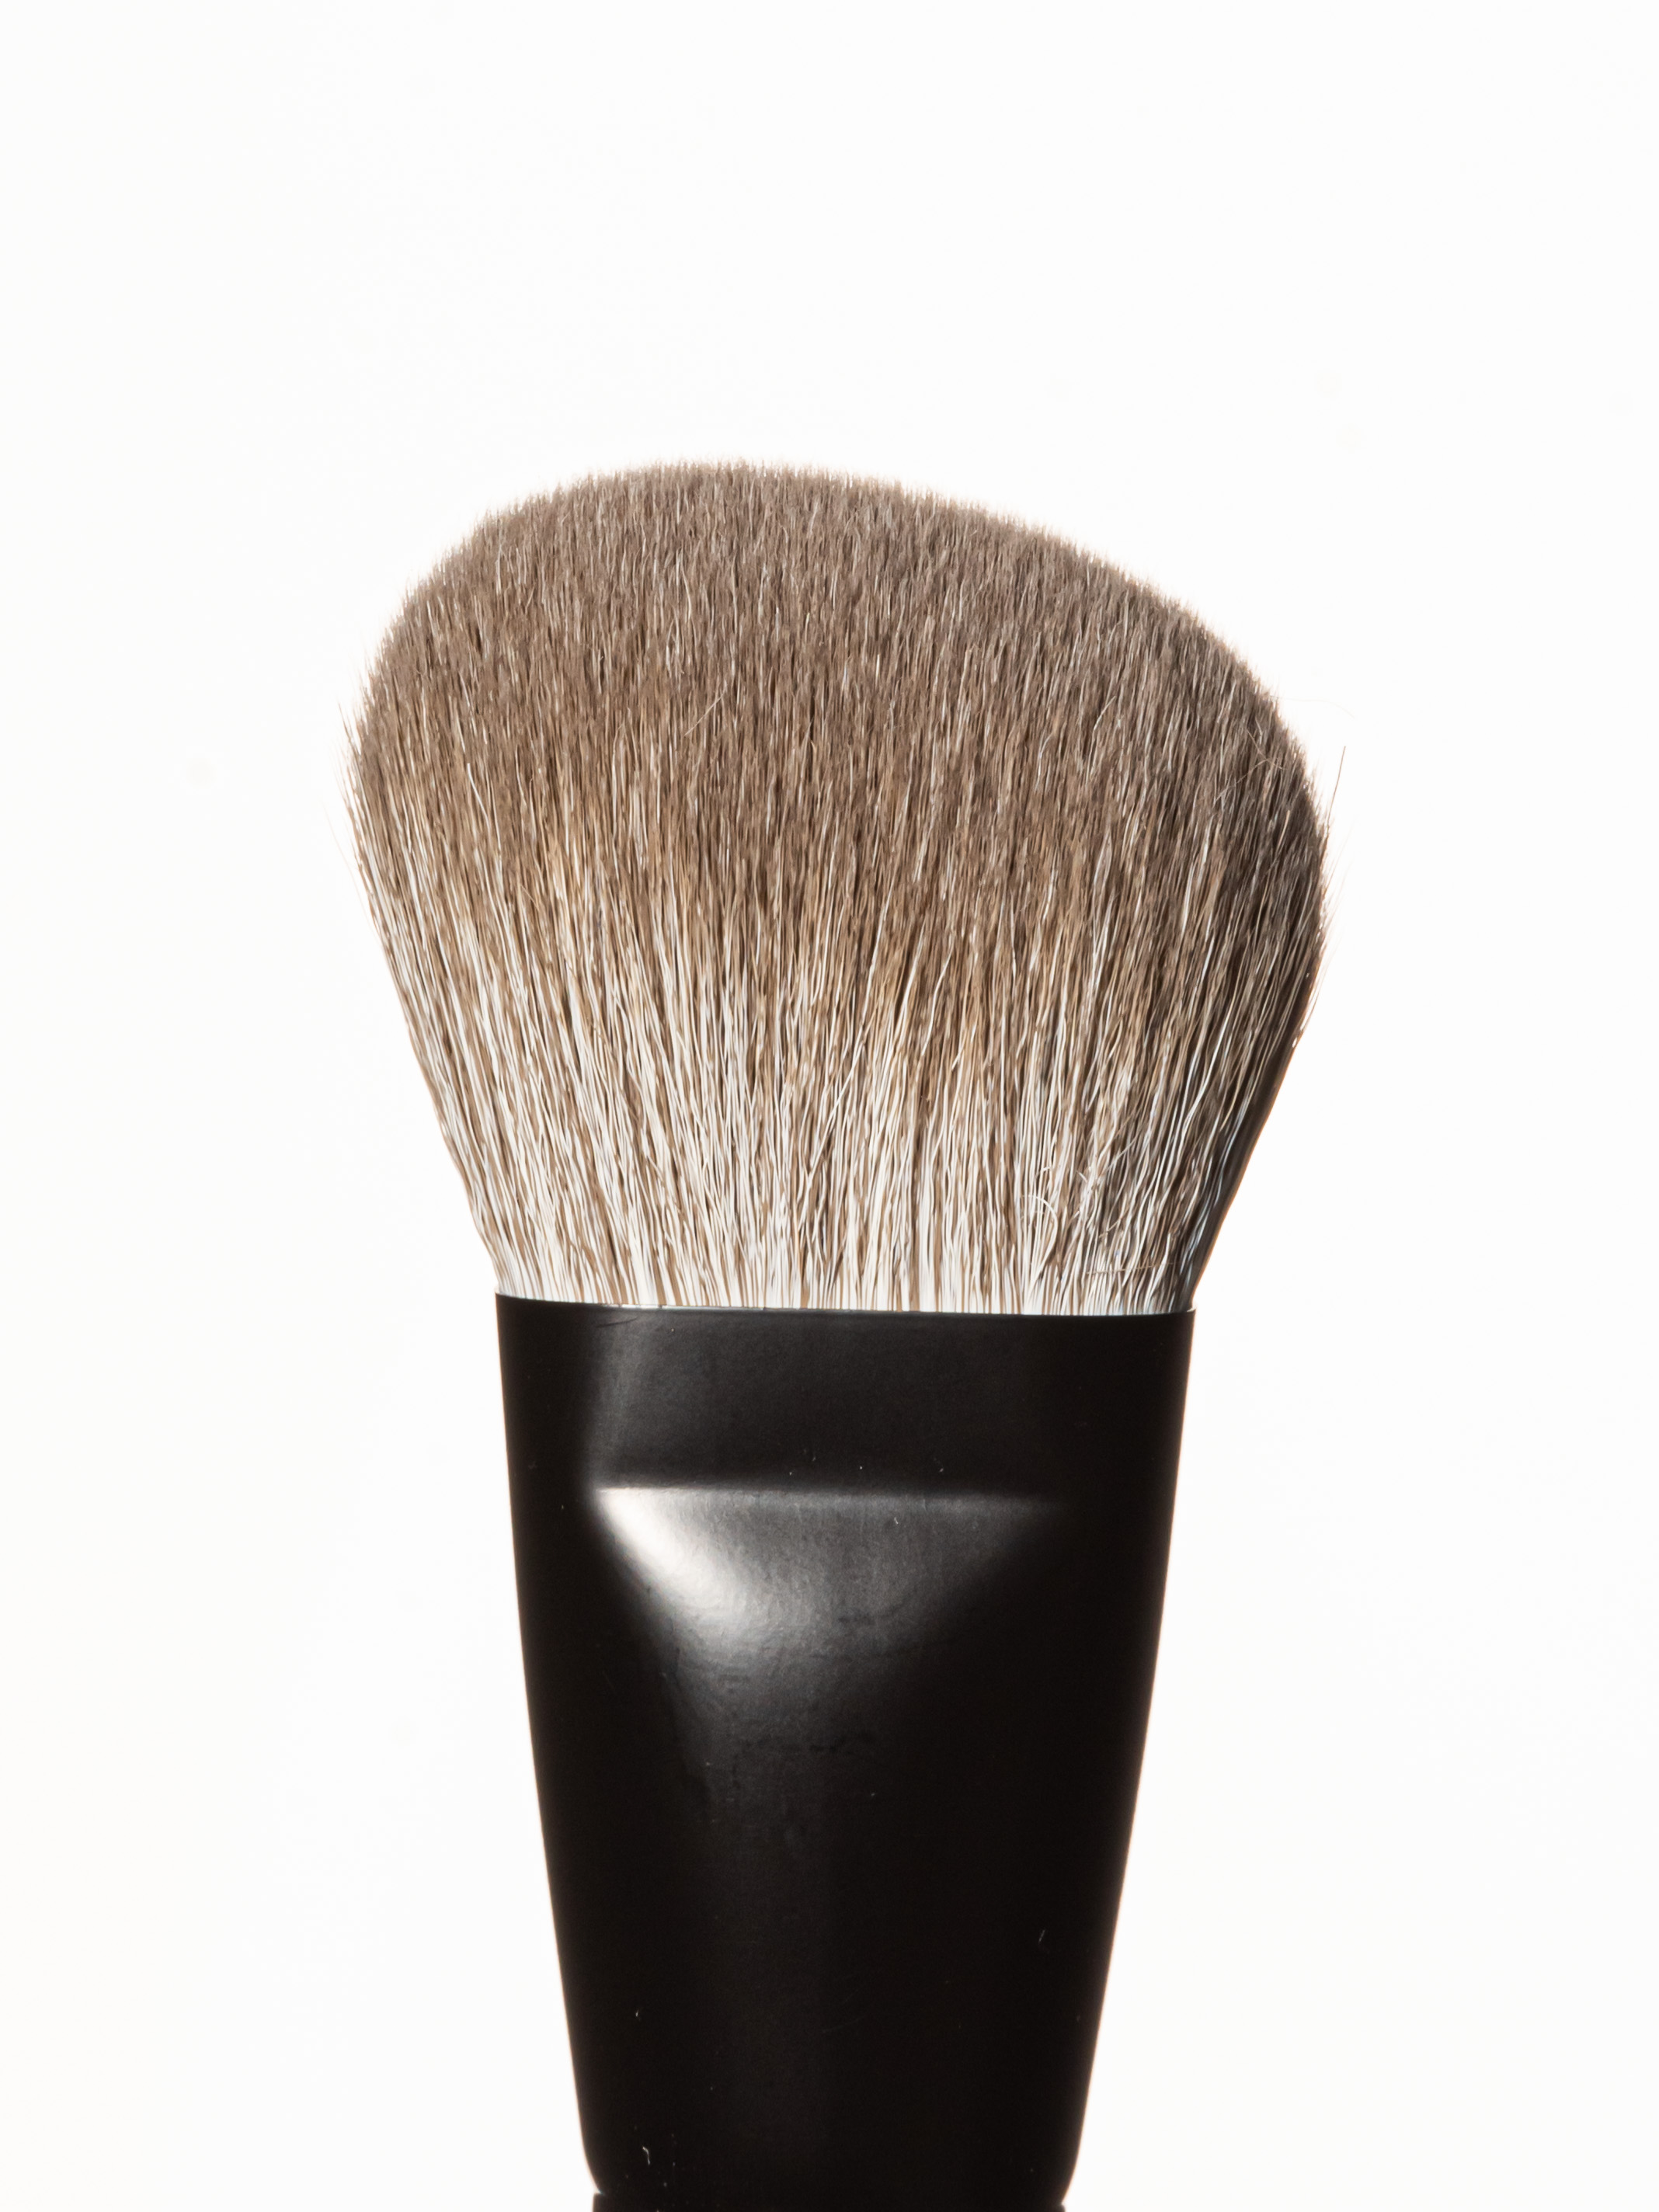 BEAUTYDRUGS Makeup Brush 11 Angel Contour Brush Кисть для нанесения кремовых и сухих текстур